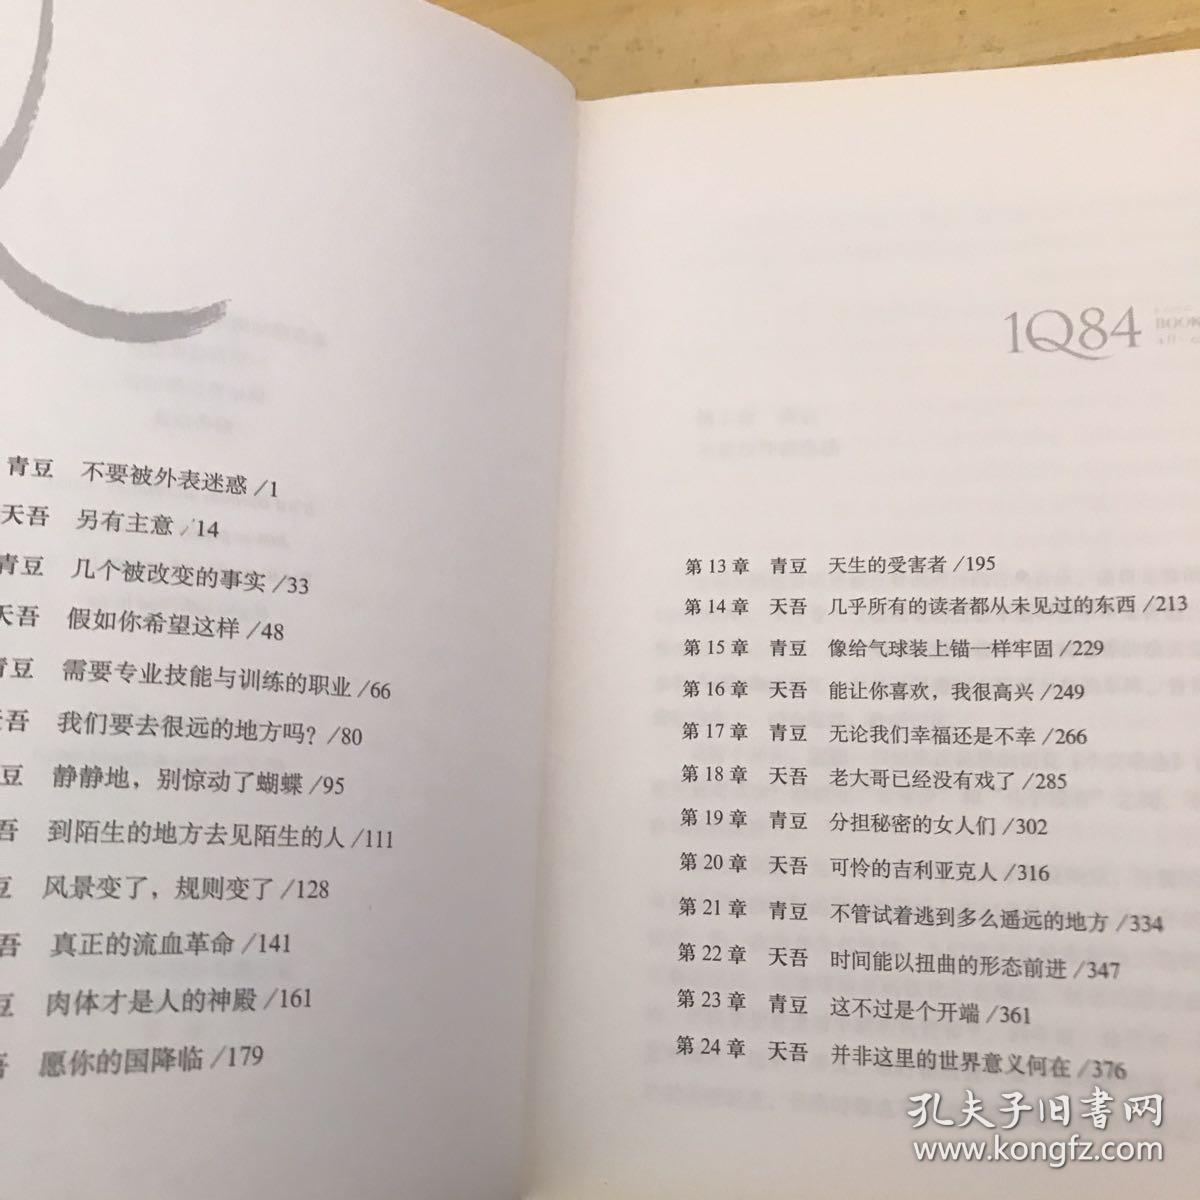 1Q84 BOOK 1-3(村上春树)